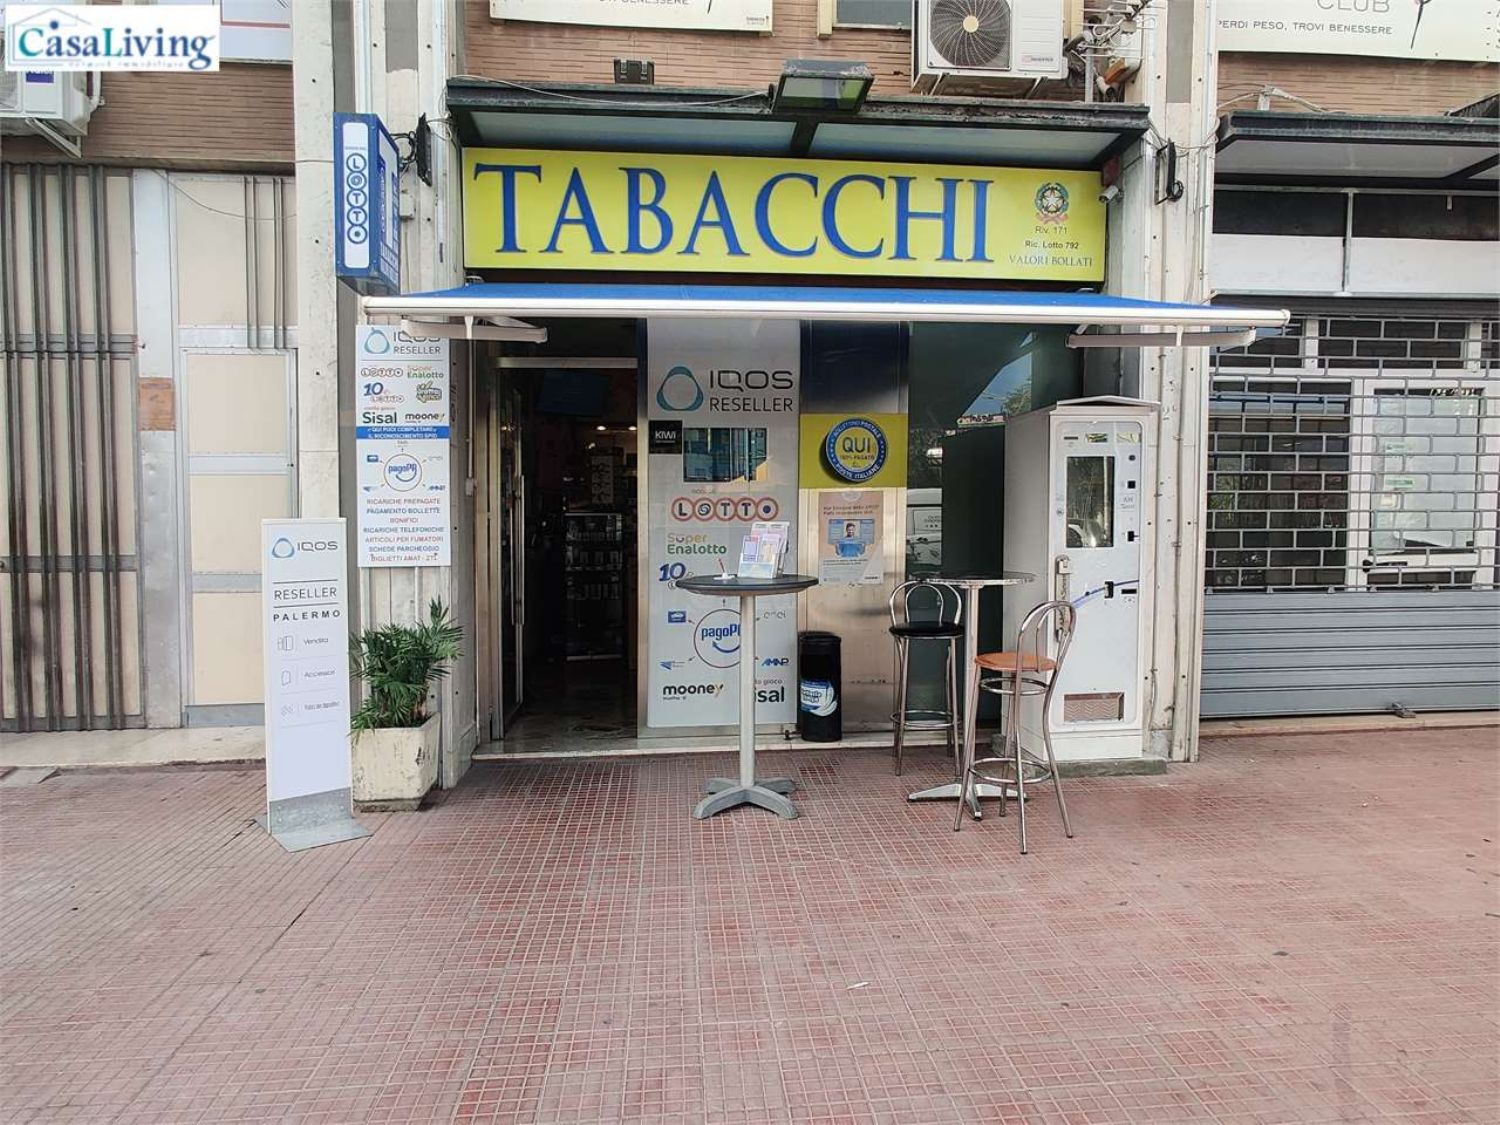 Locale commerciale in vendita in via uditore 2, Palermo